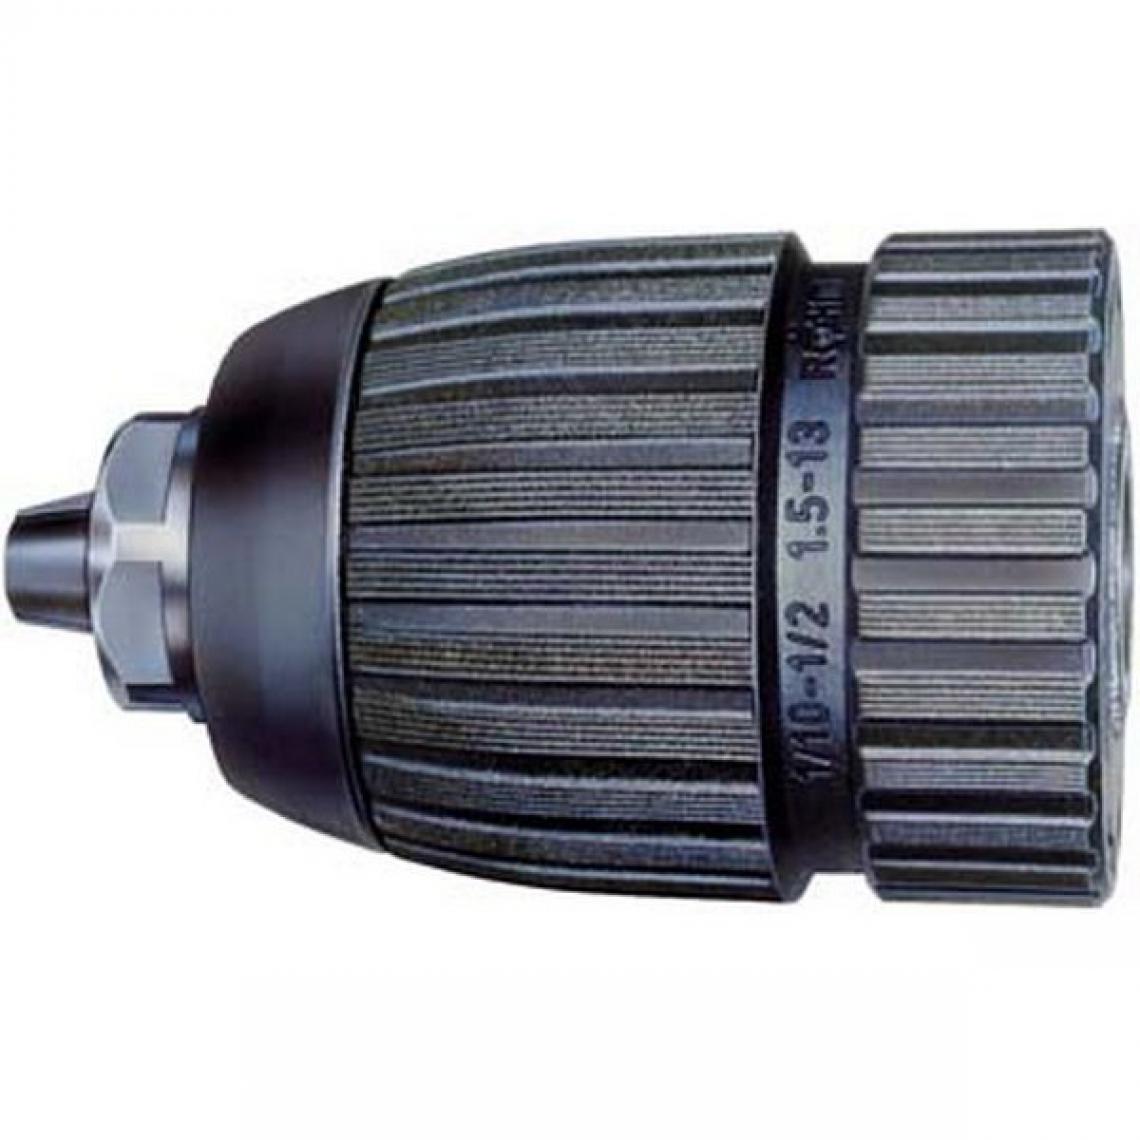 Rohm - Mandrin Extra RV, Capacité de serrage : 1,5-13,0 mm, Fixation 3/8''x 24, Ø extérieur 42,7 mm - Accessoires vissage, perçage